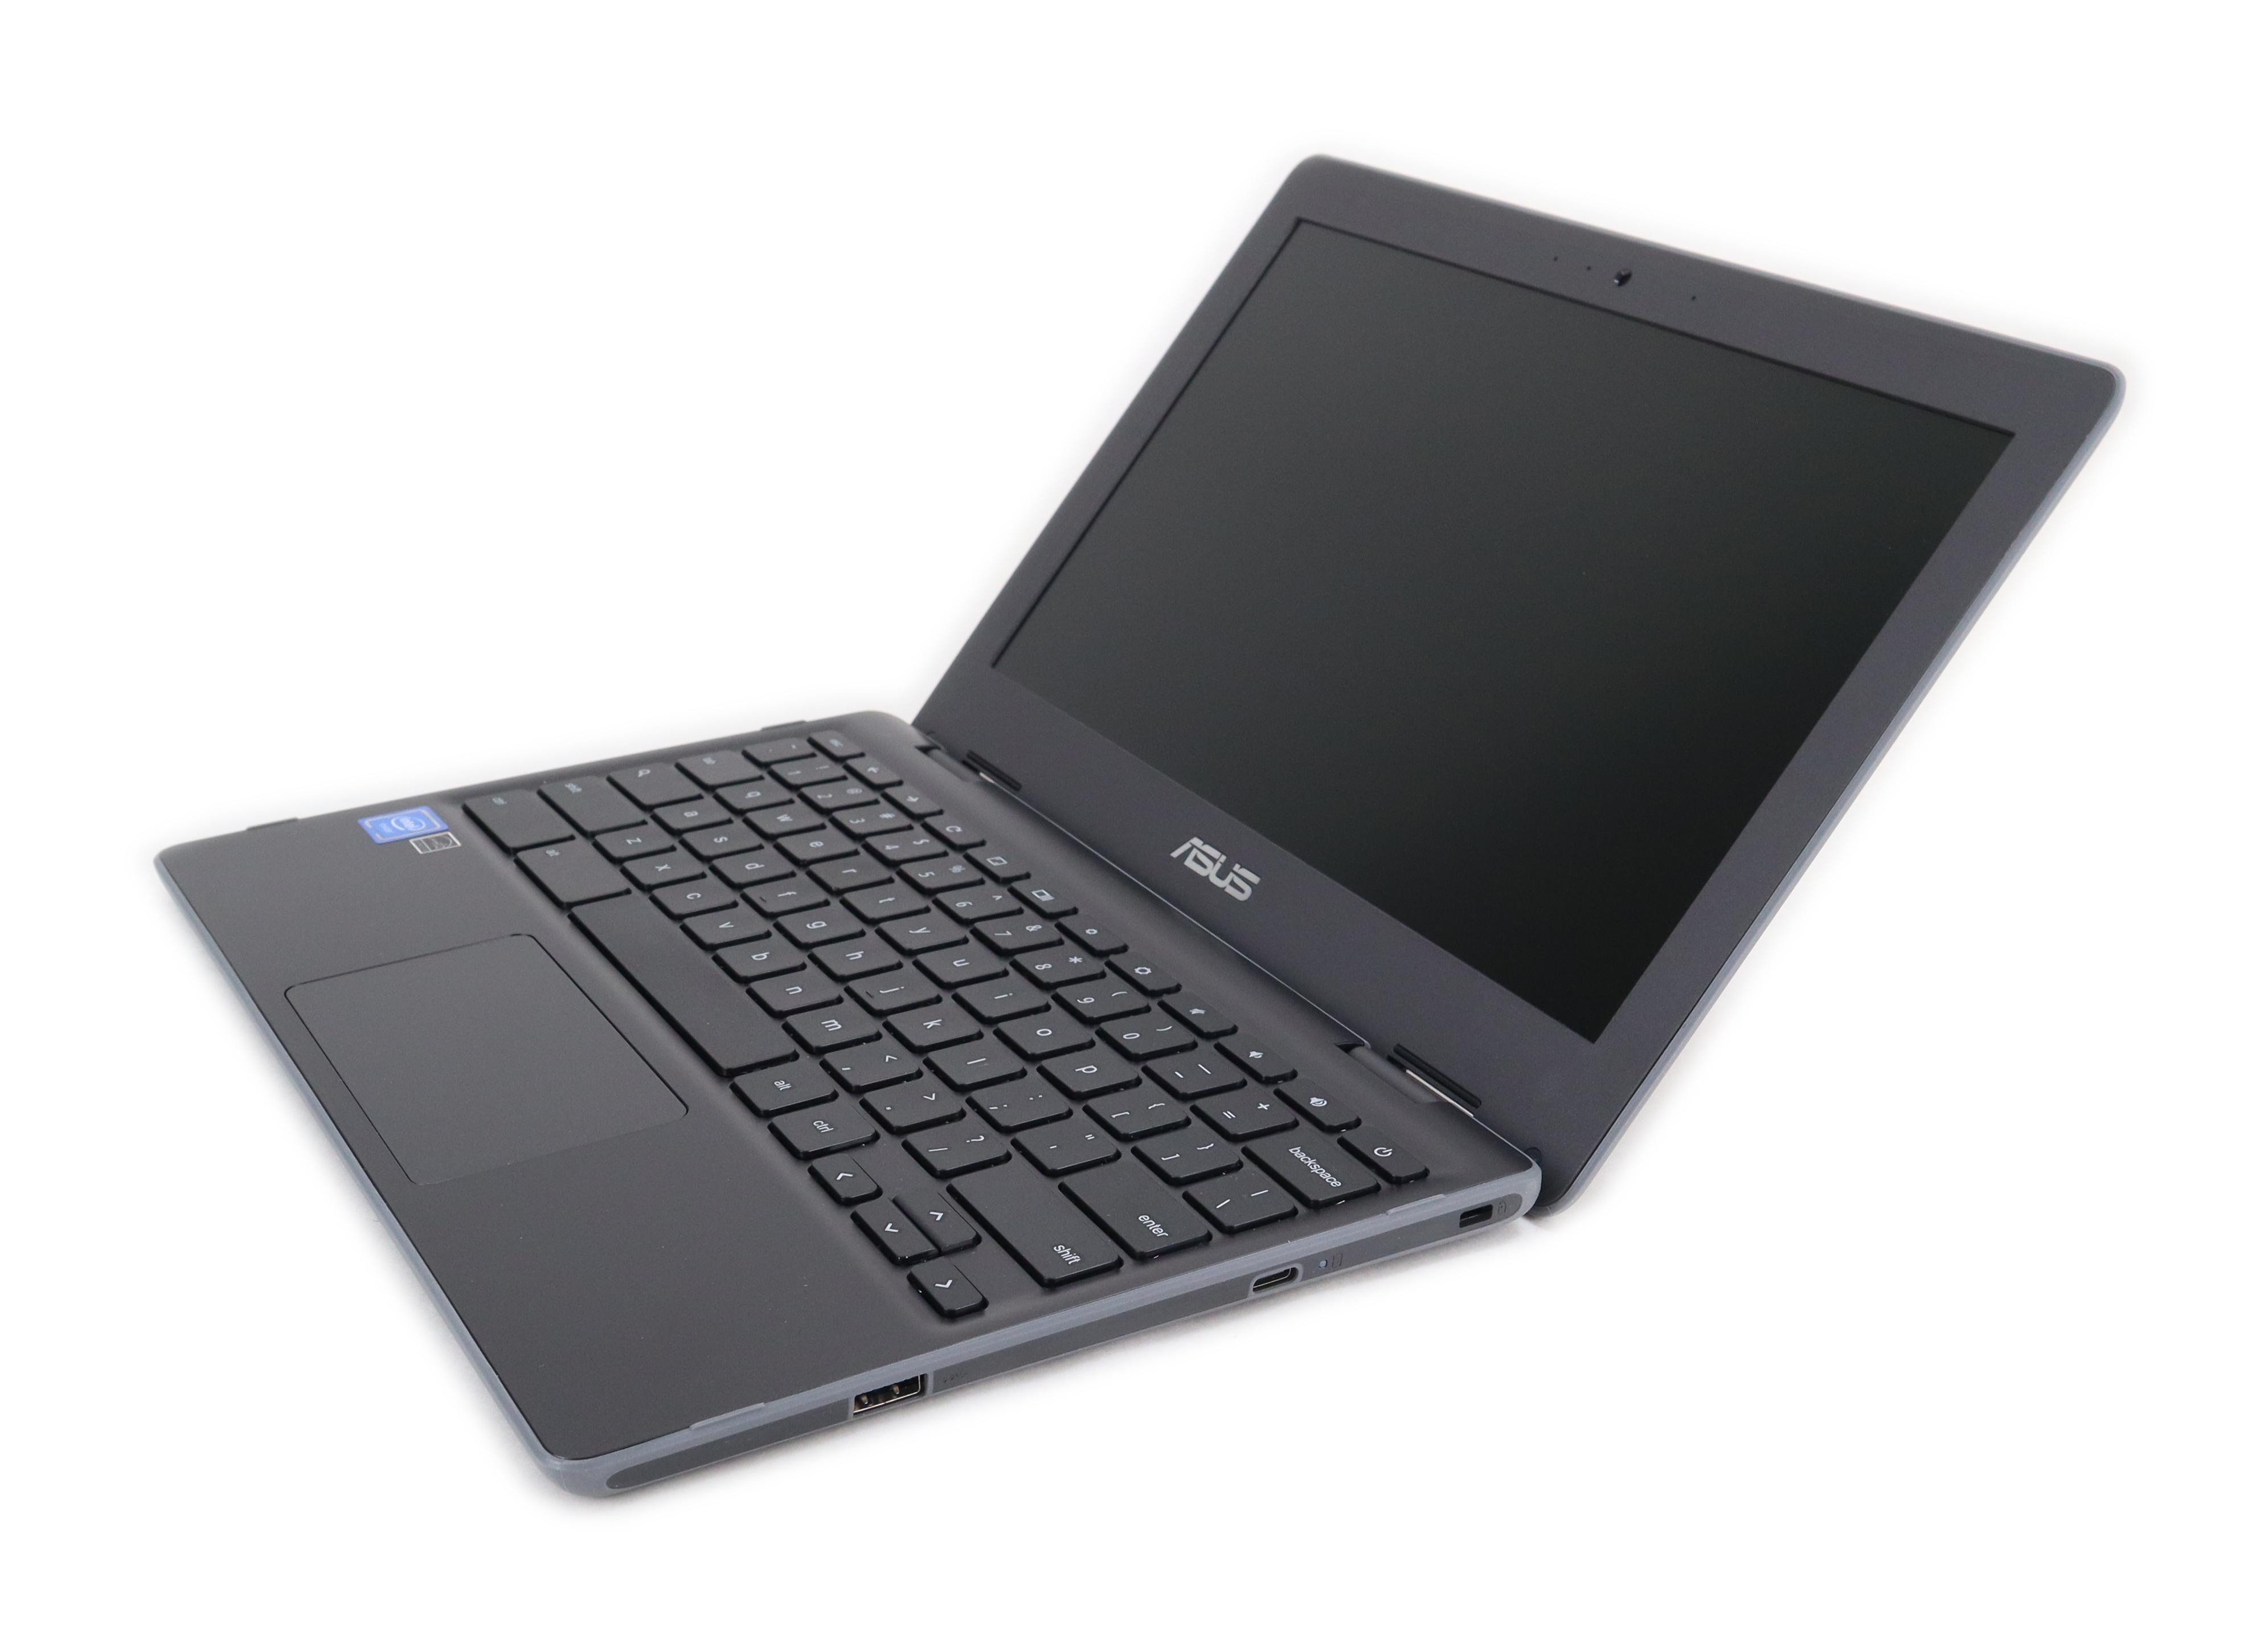 Asus Chromebook 11.6" Intel Celeron N4020 1.1GHz 4GB RAM 32GB eMMC C204MA-YB02-GR